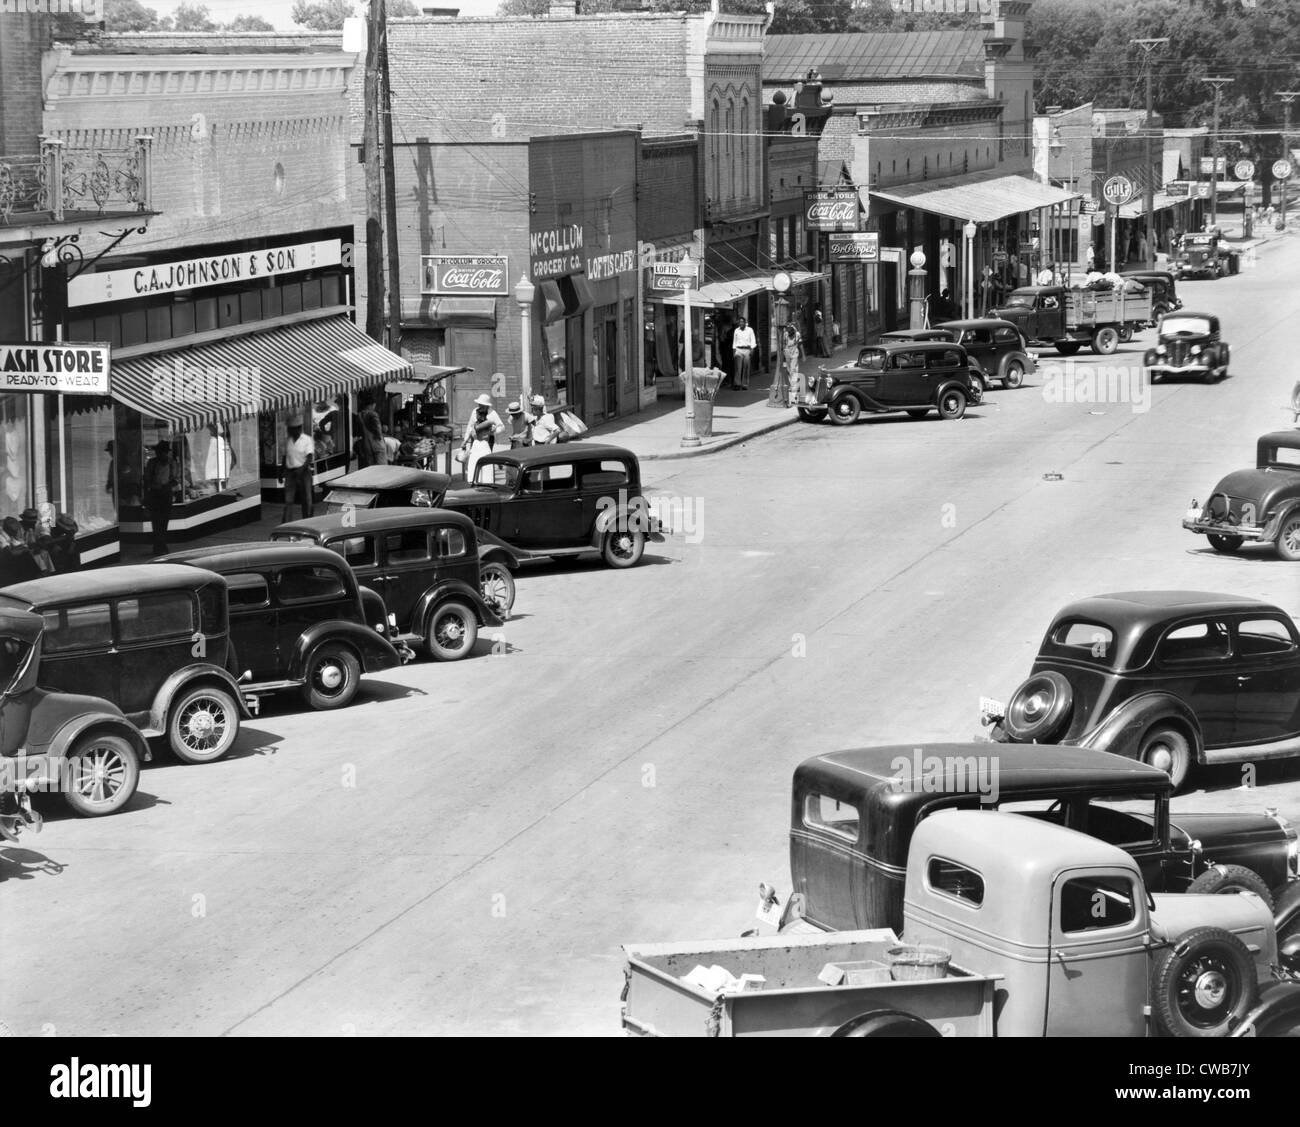 Hauptstraße von Greensboro, Kreisstadt von Hale County, Alabama. Veröffentlicht in dem Buch "Let us nun Lob berühmter Männer". Stockfoto